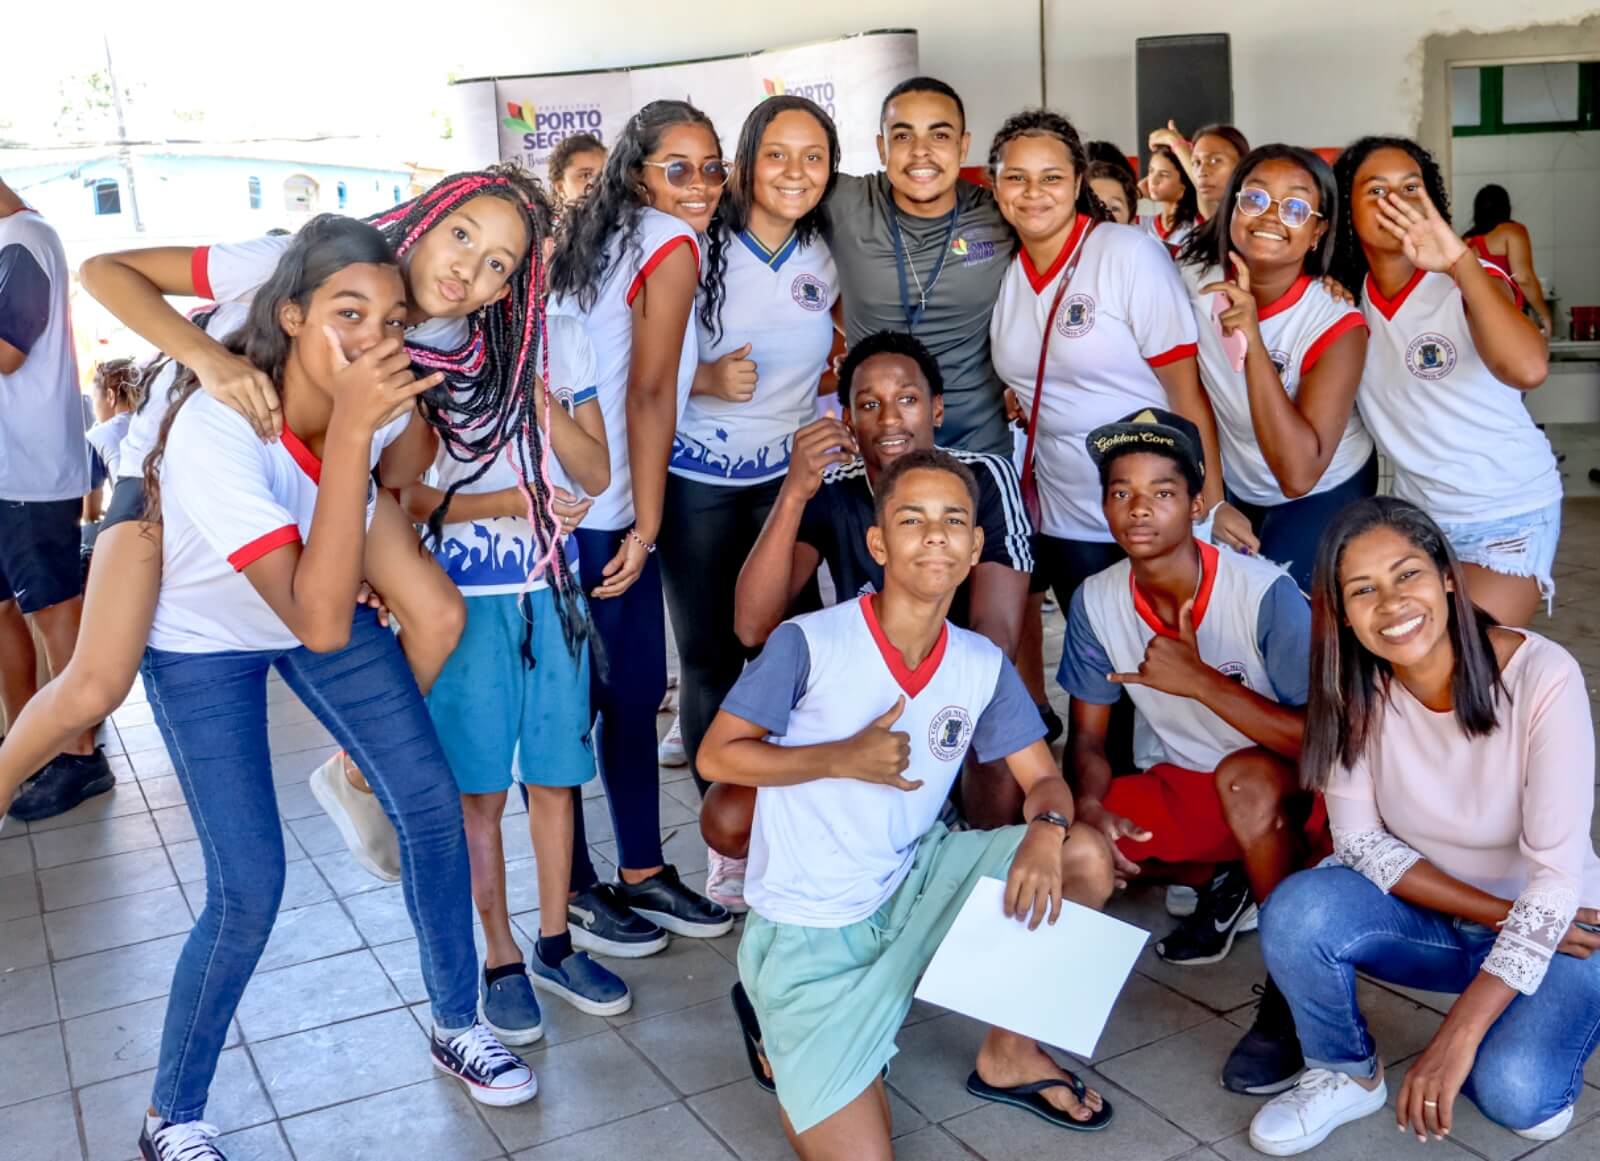 Caravana da Juventude leva esportes, lazer e serviços aos estudantes de Porto Seguro 6